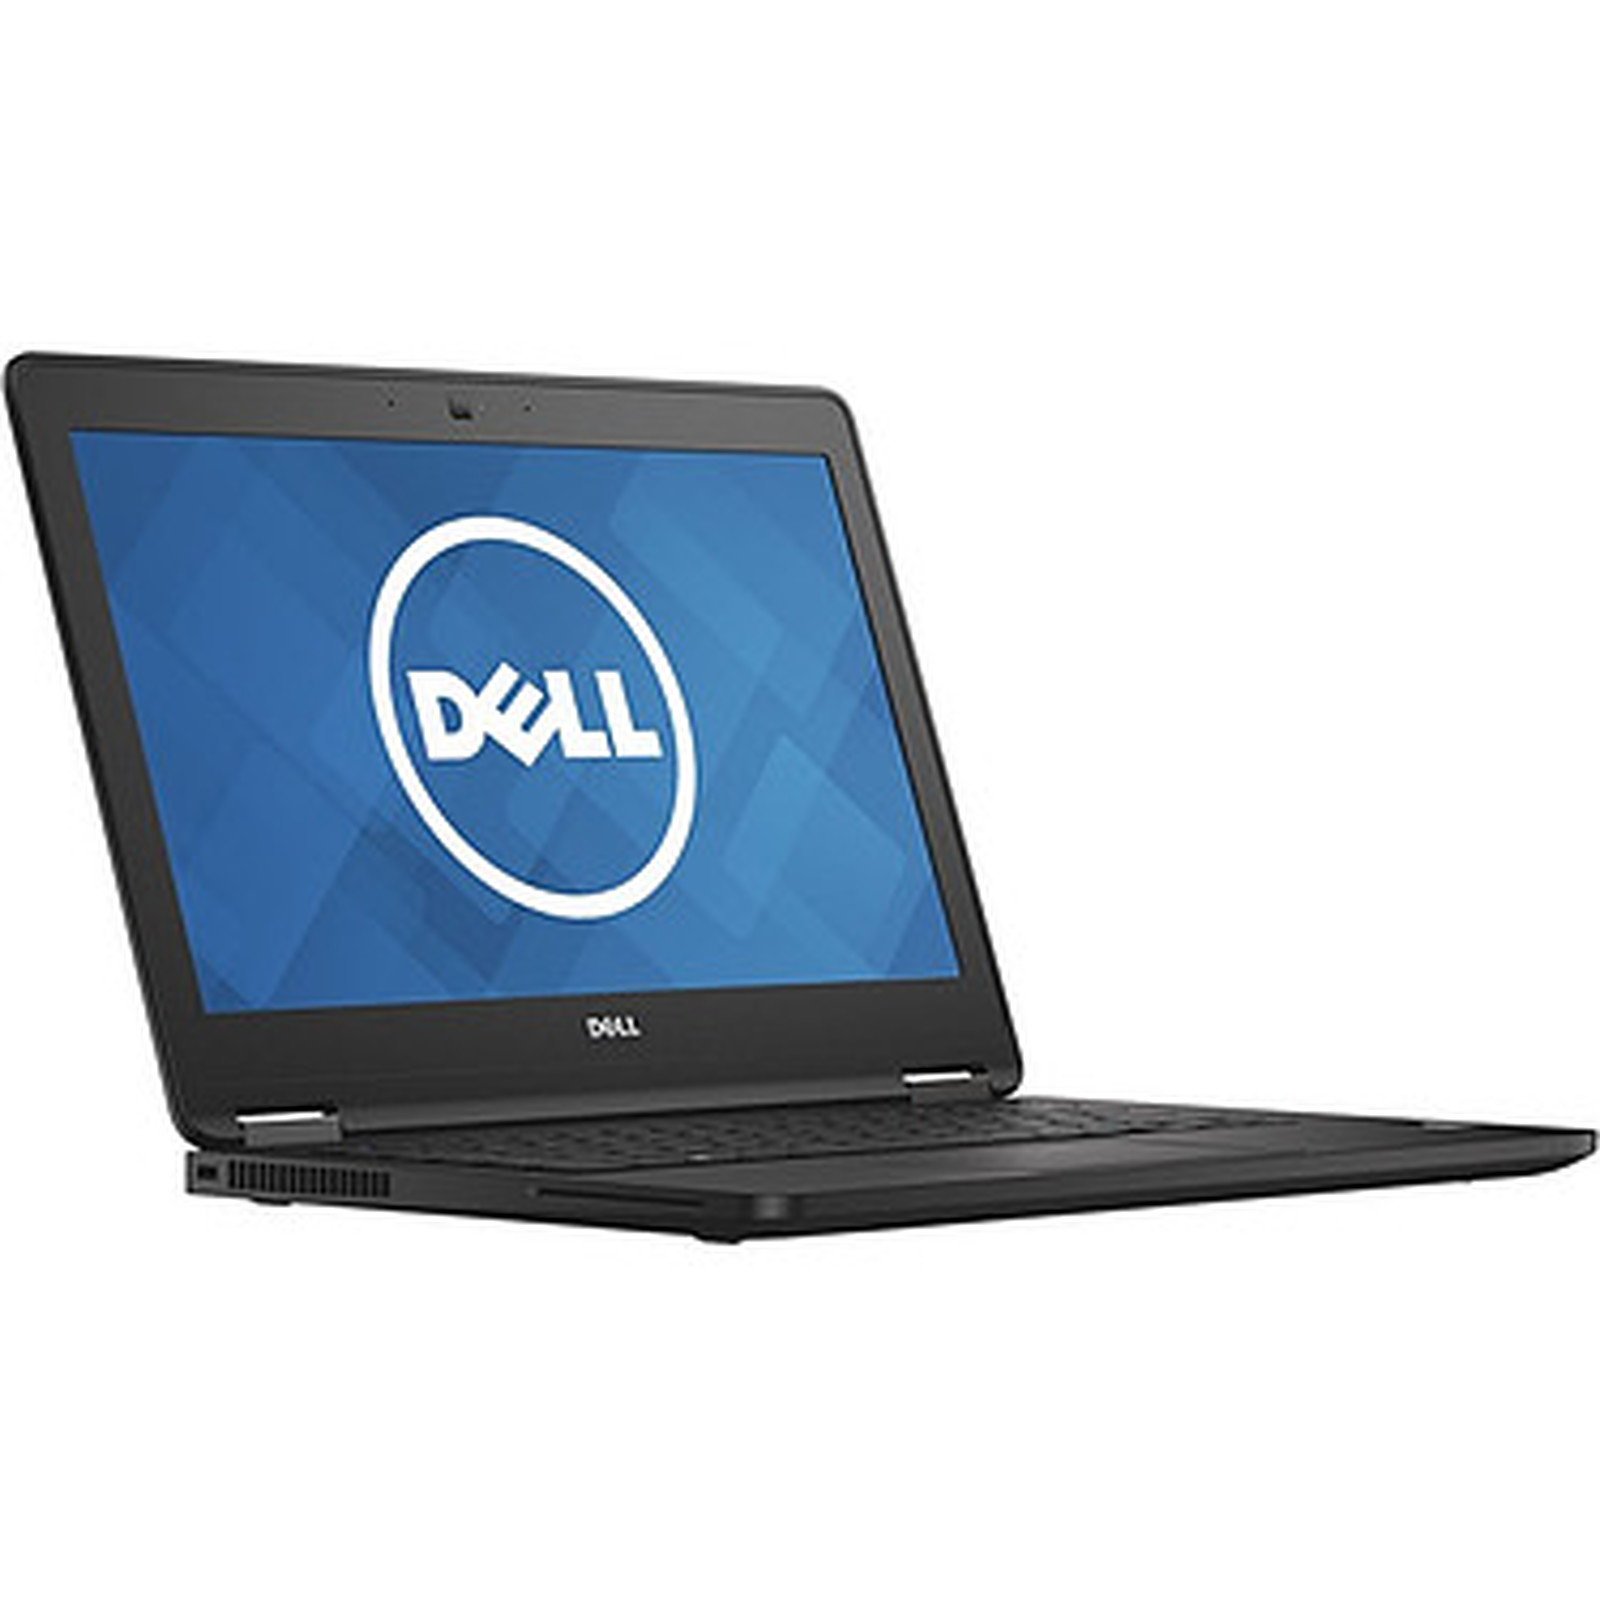 Dell Latitude E7470 (E747016480i5) · Reconditionne - PC portable reconditionne Dell